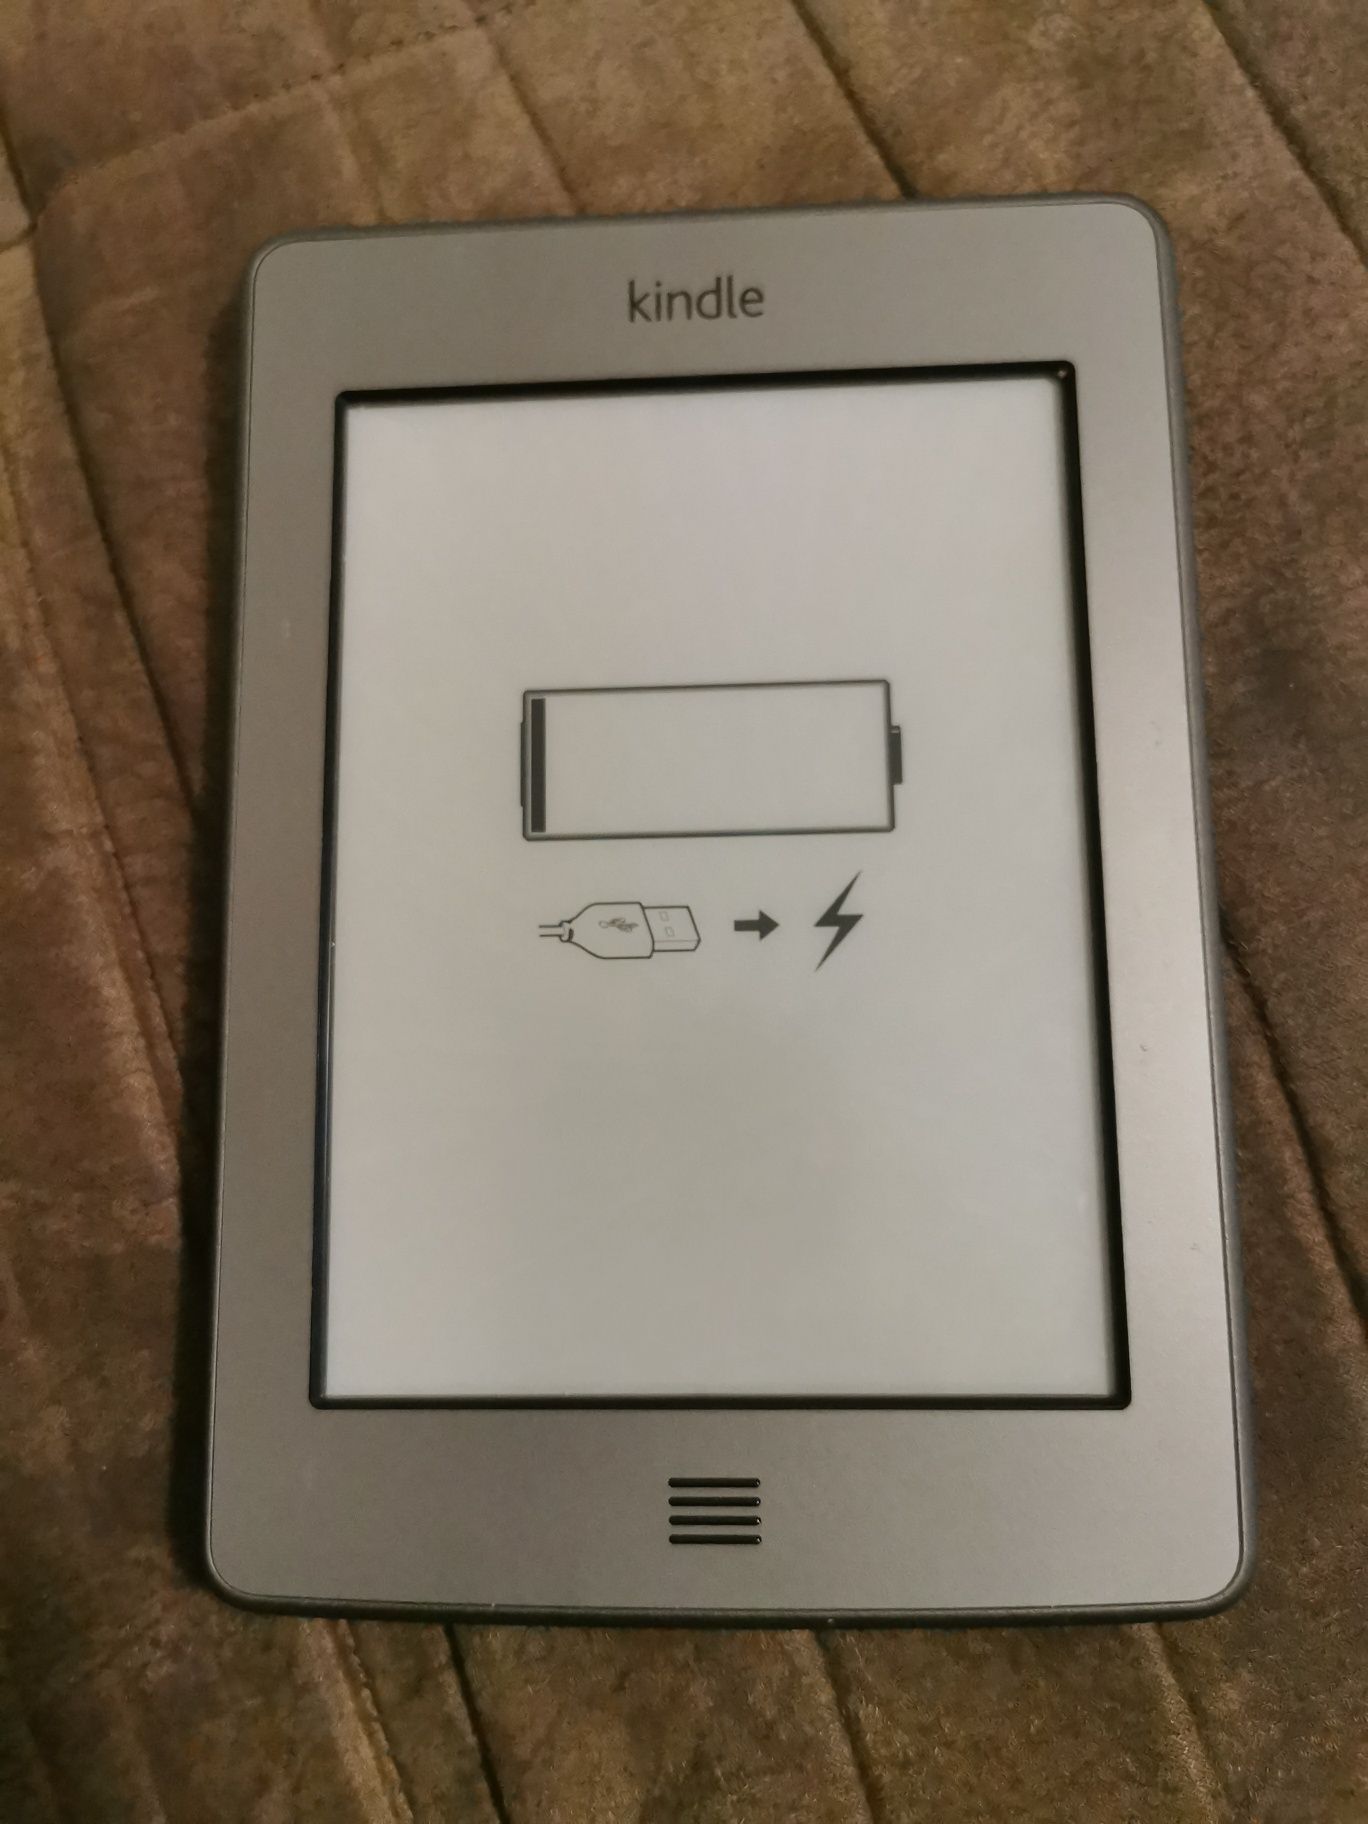 Kindle amazon do1200